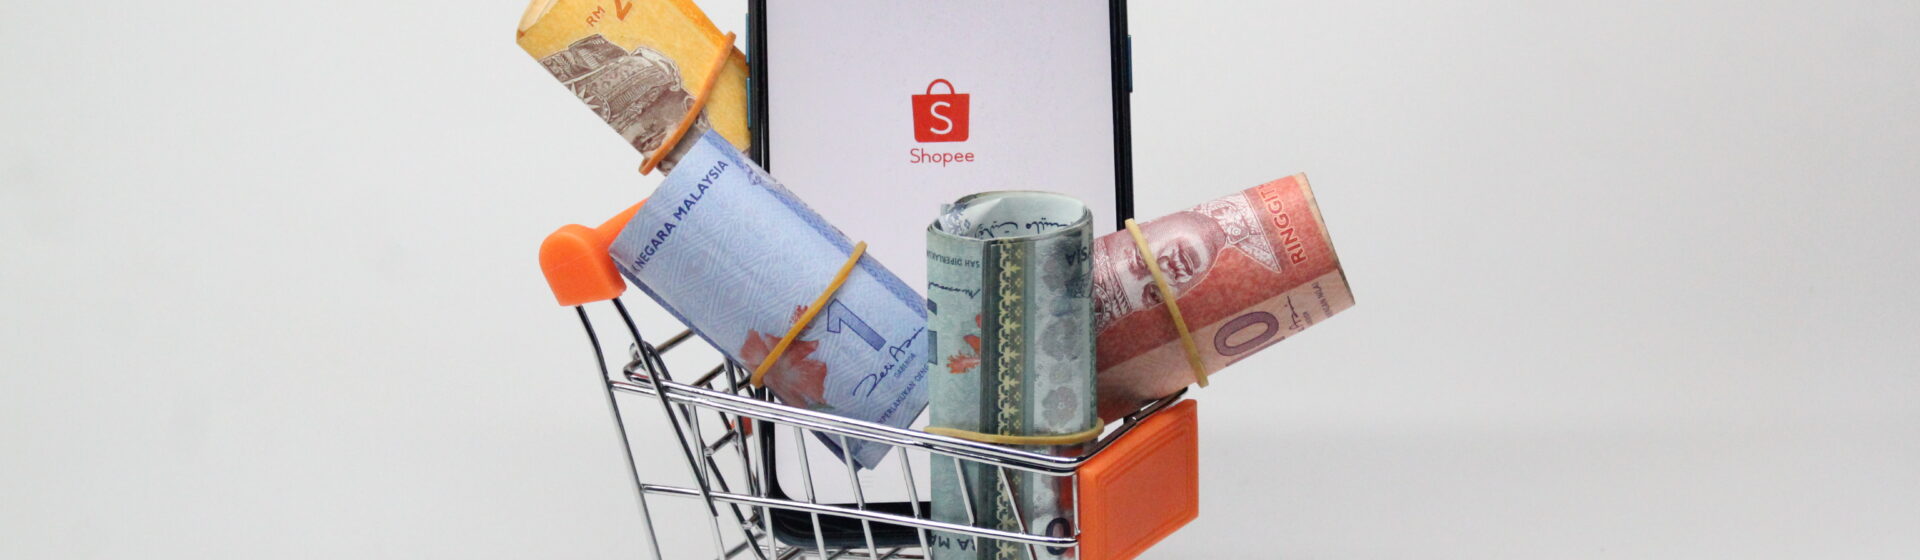 Miniatura de um carrinho de supermercado com notas de dinheiro e um celular mostrando o logo da Shopee